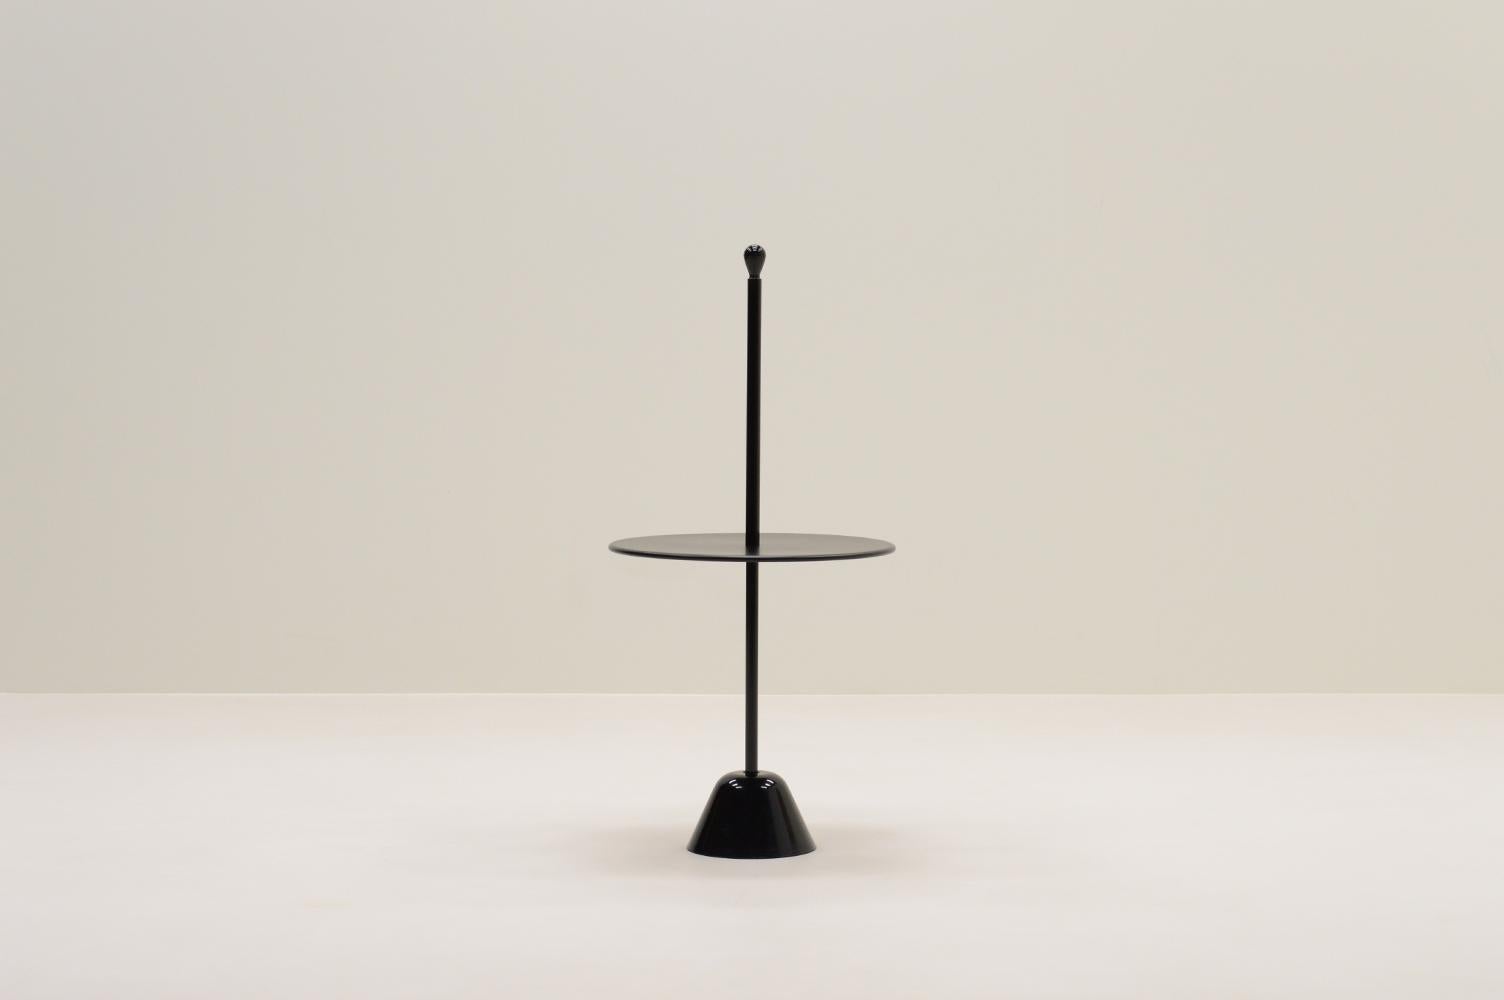 Table d'appoint Cervomuto par Achille Castiglioni pour Zanottta, 1970 Italie. Une combinaison d'une base en polypropylène, d'une colonne en acier et d'un plateau en bois, le tout fini en noir. Le Servomuto a été conçu pour la gamme Servi par Achille